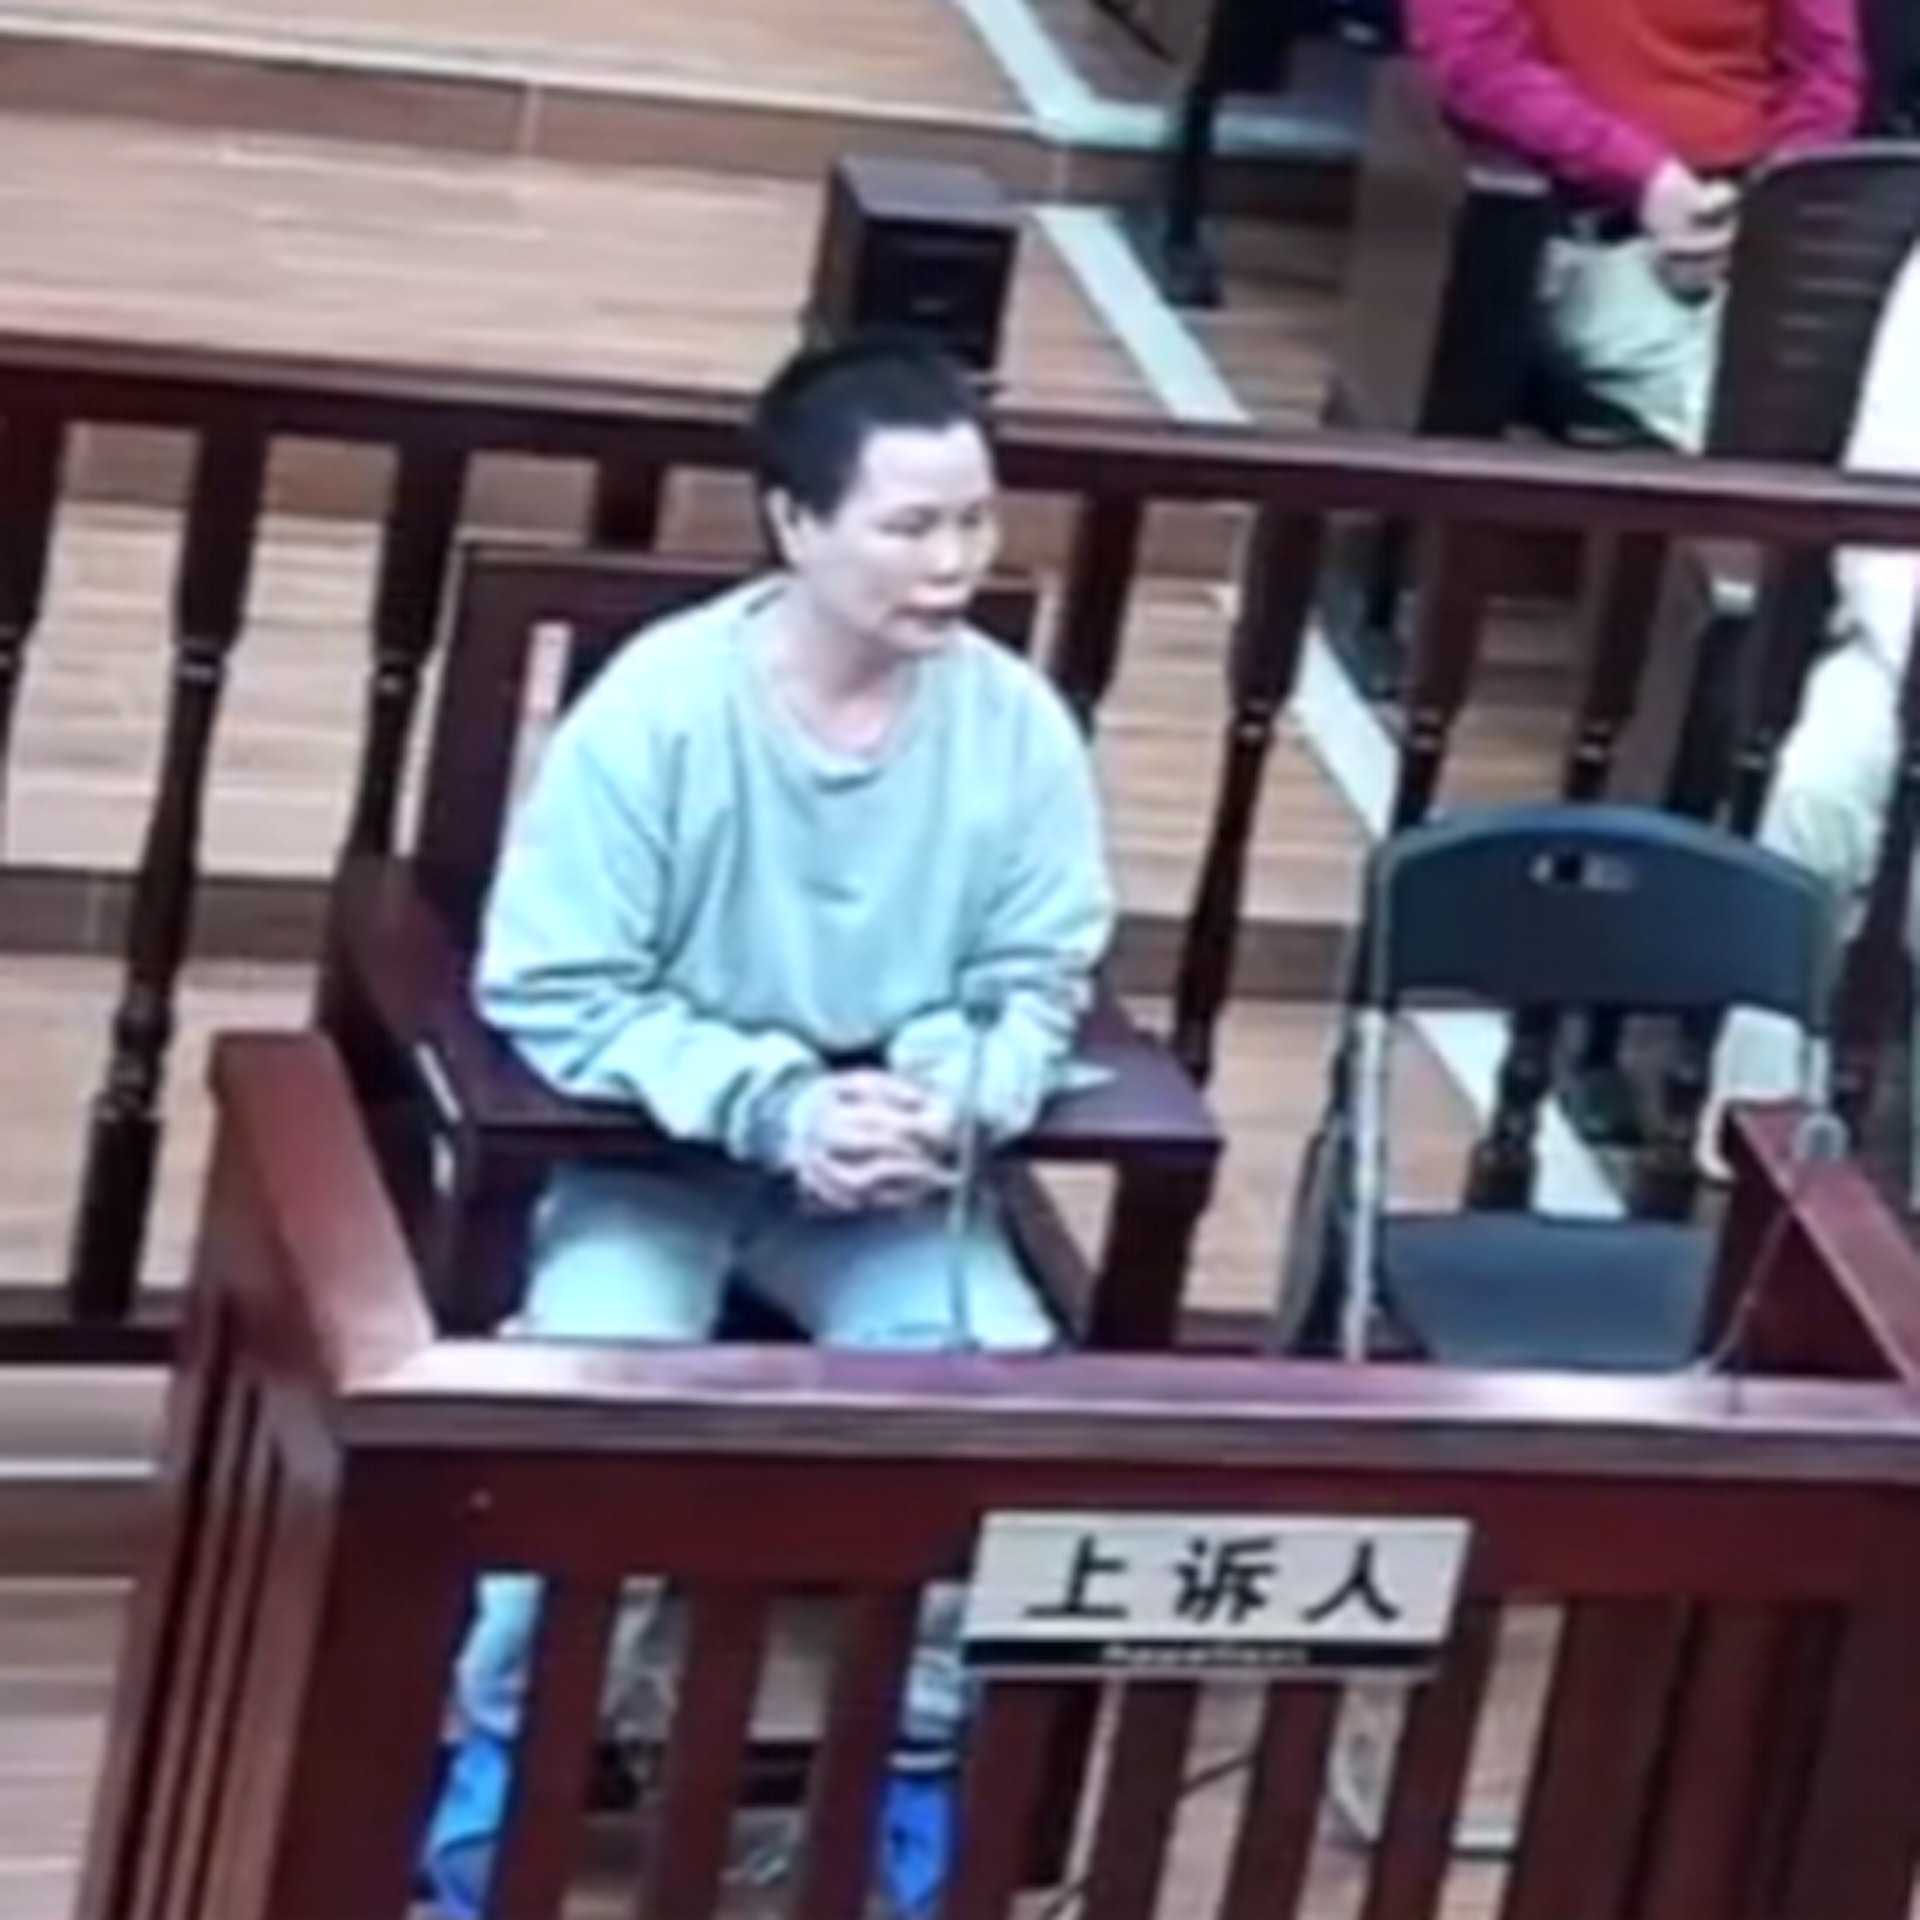 廣州保姆陳宇萍已被執行死刑。(微博圖片)